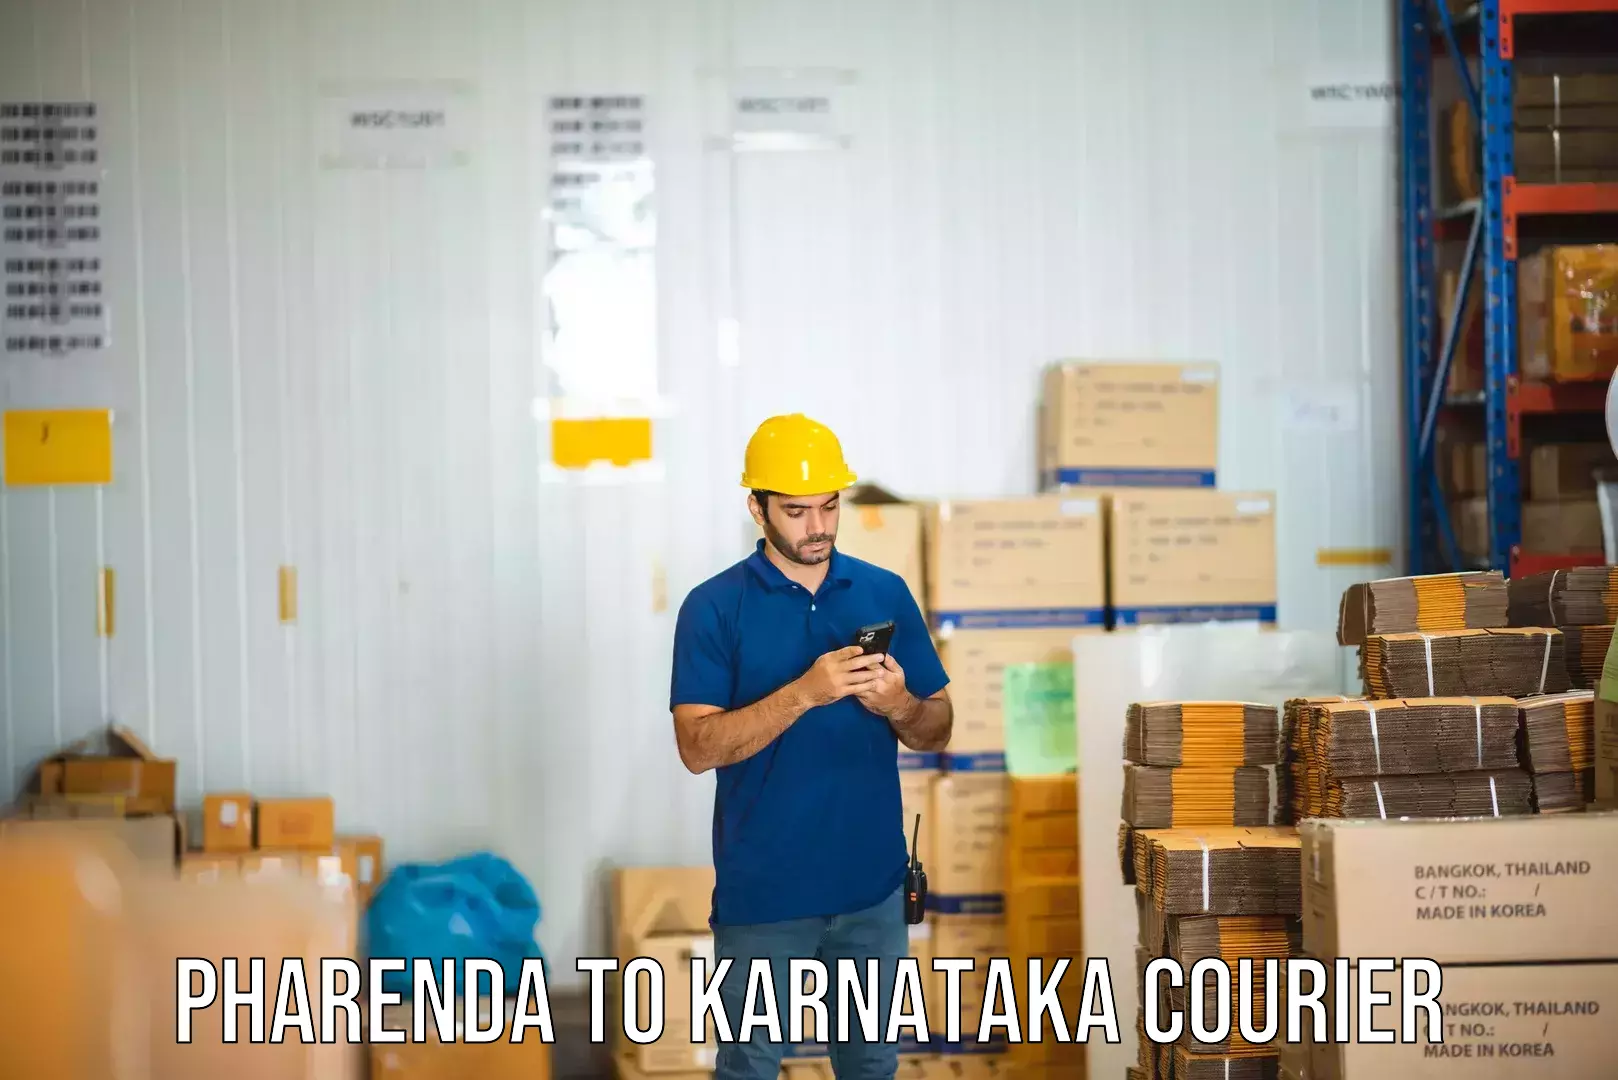 Next-day freight services Pharenda to Karnataka